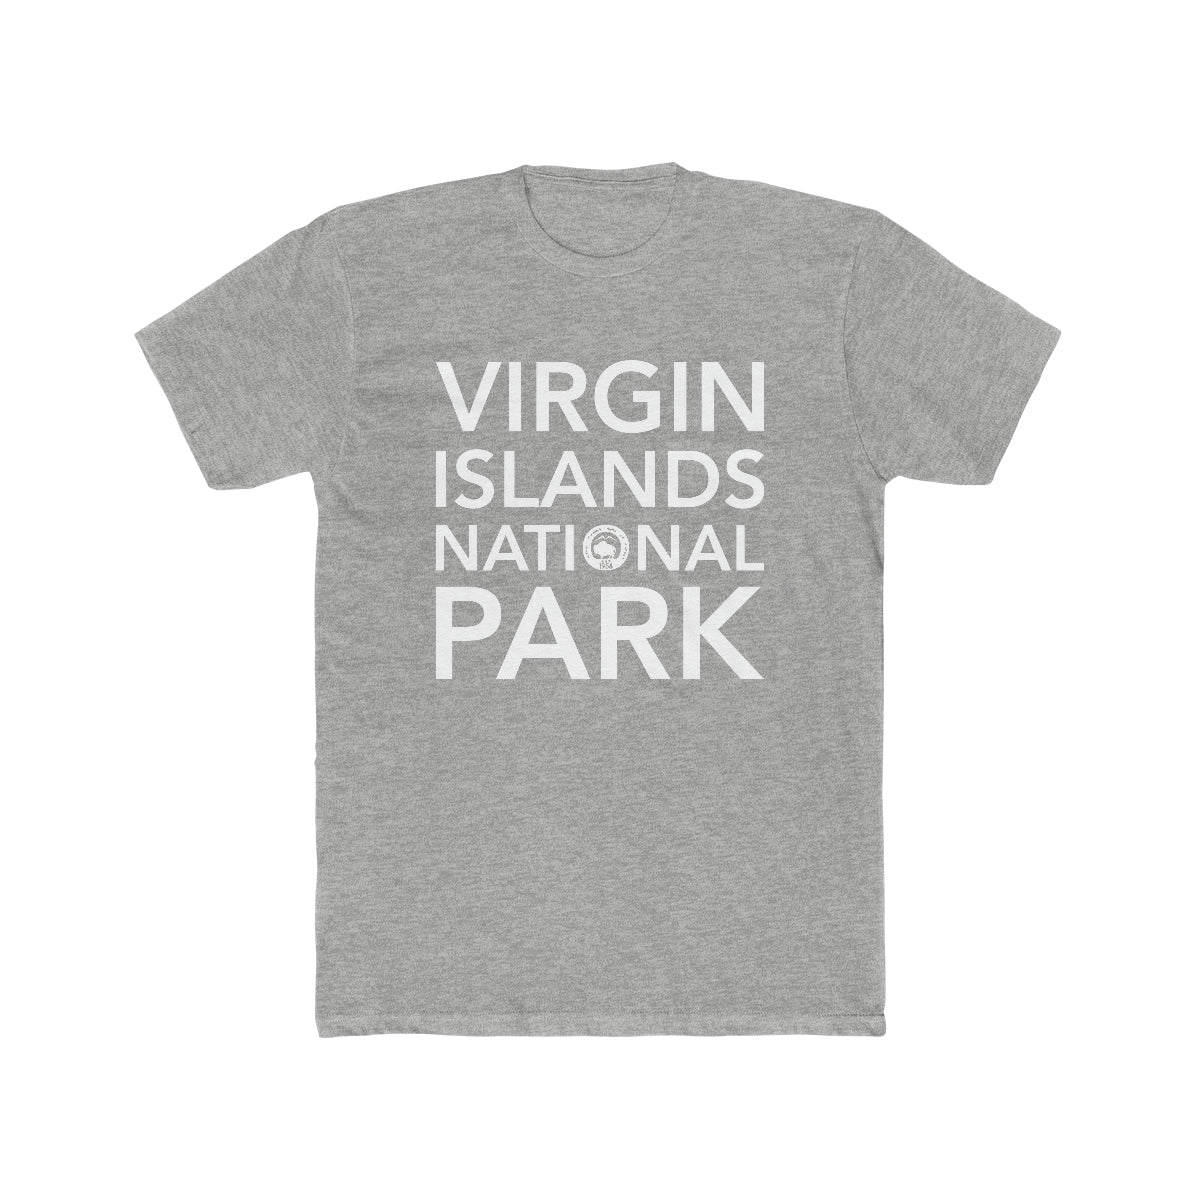 Virgin Islands National Park T-Shirt Block Text